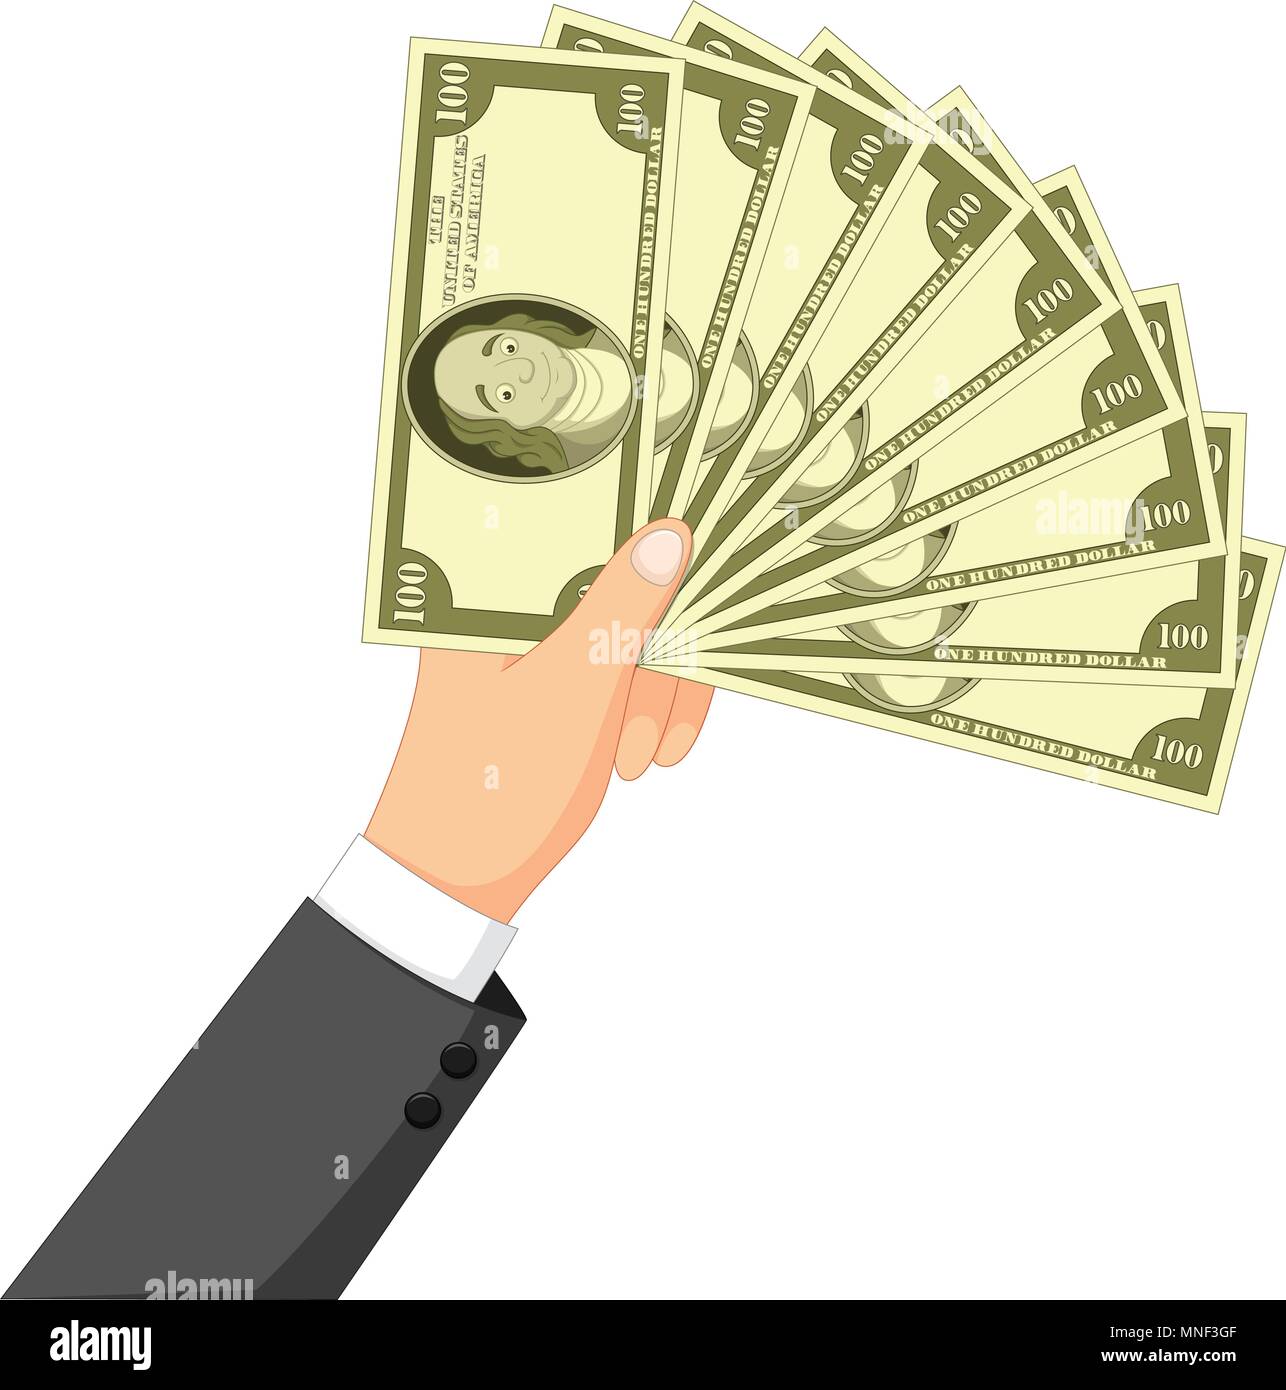 Cartoon money in the hand Stock Vector